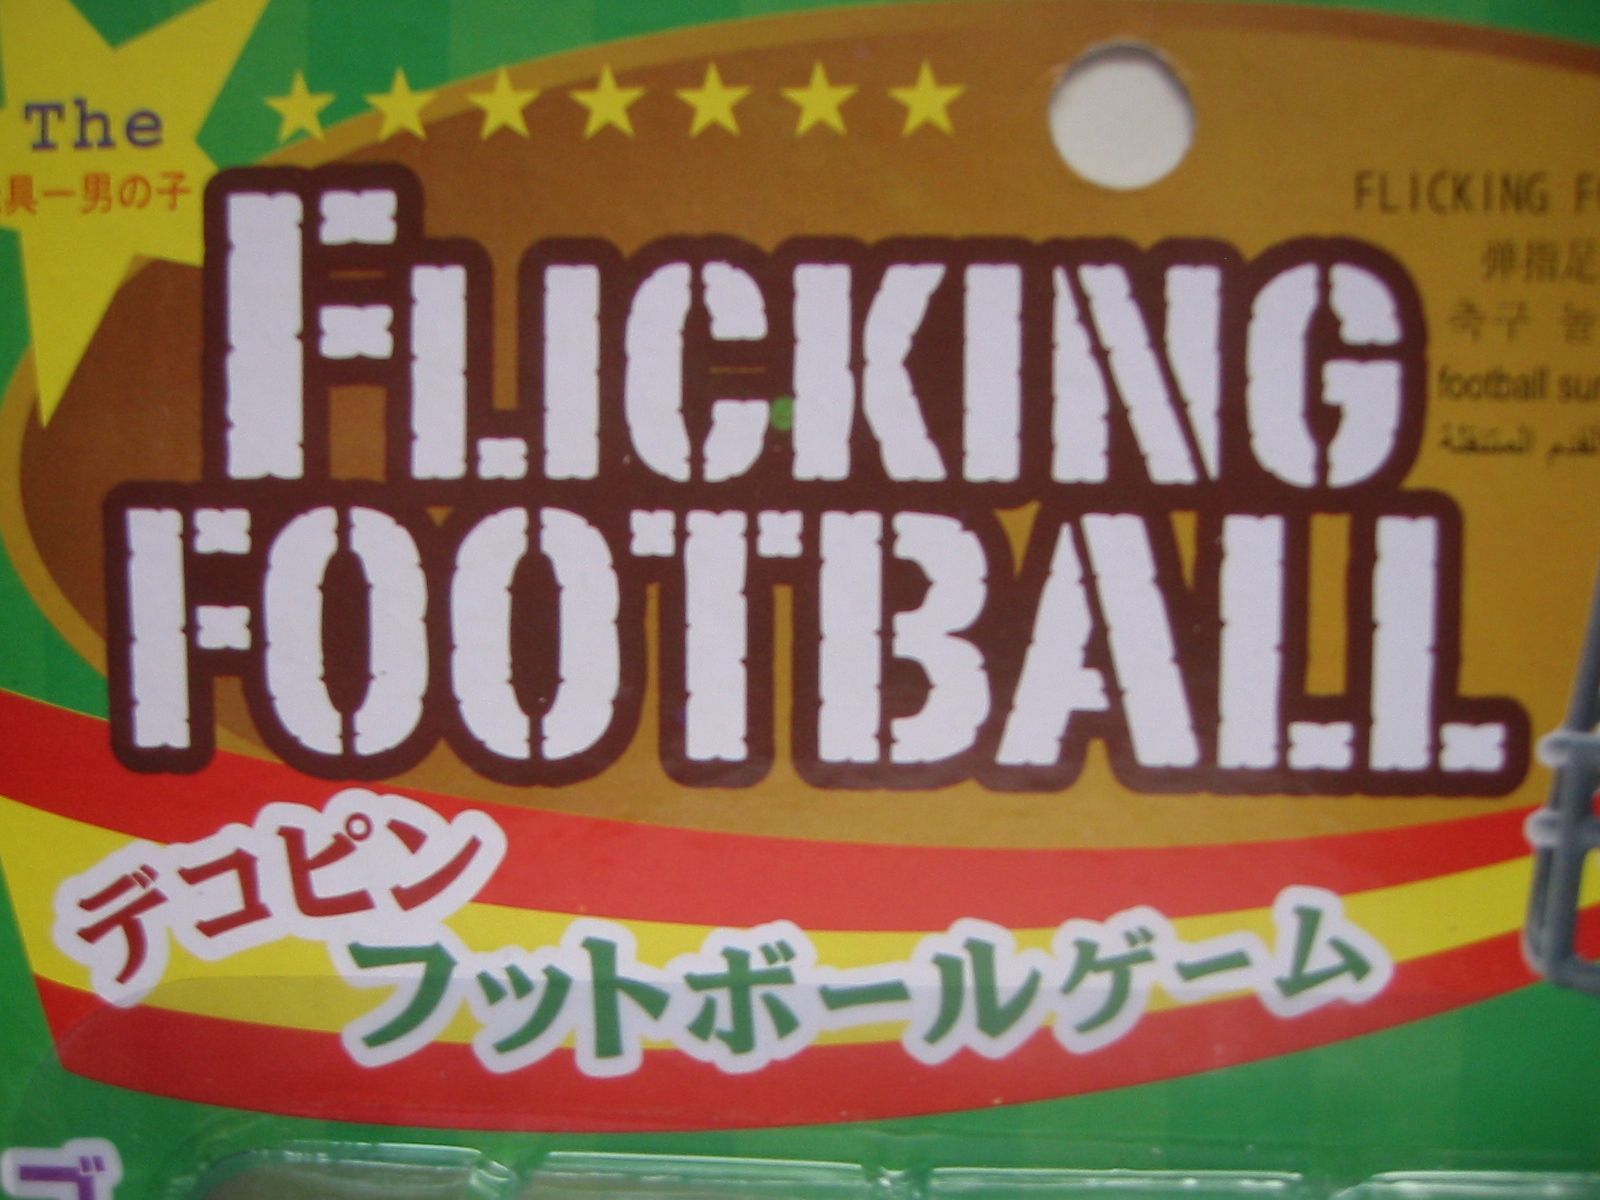 Flicking Football